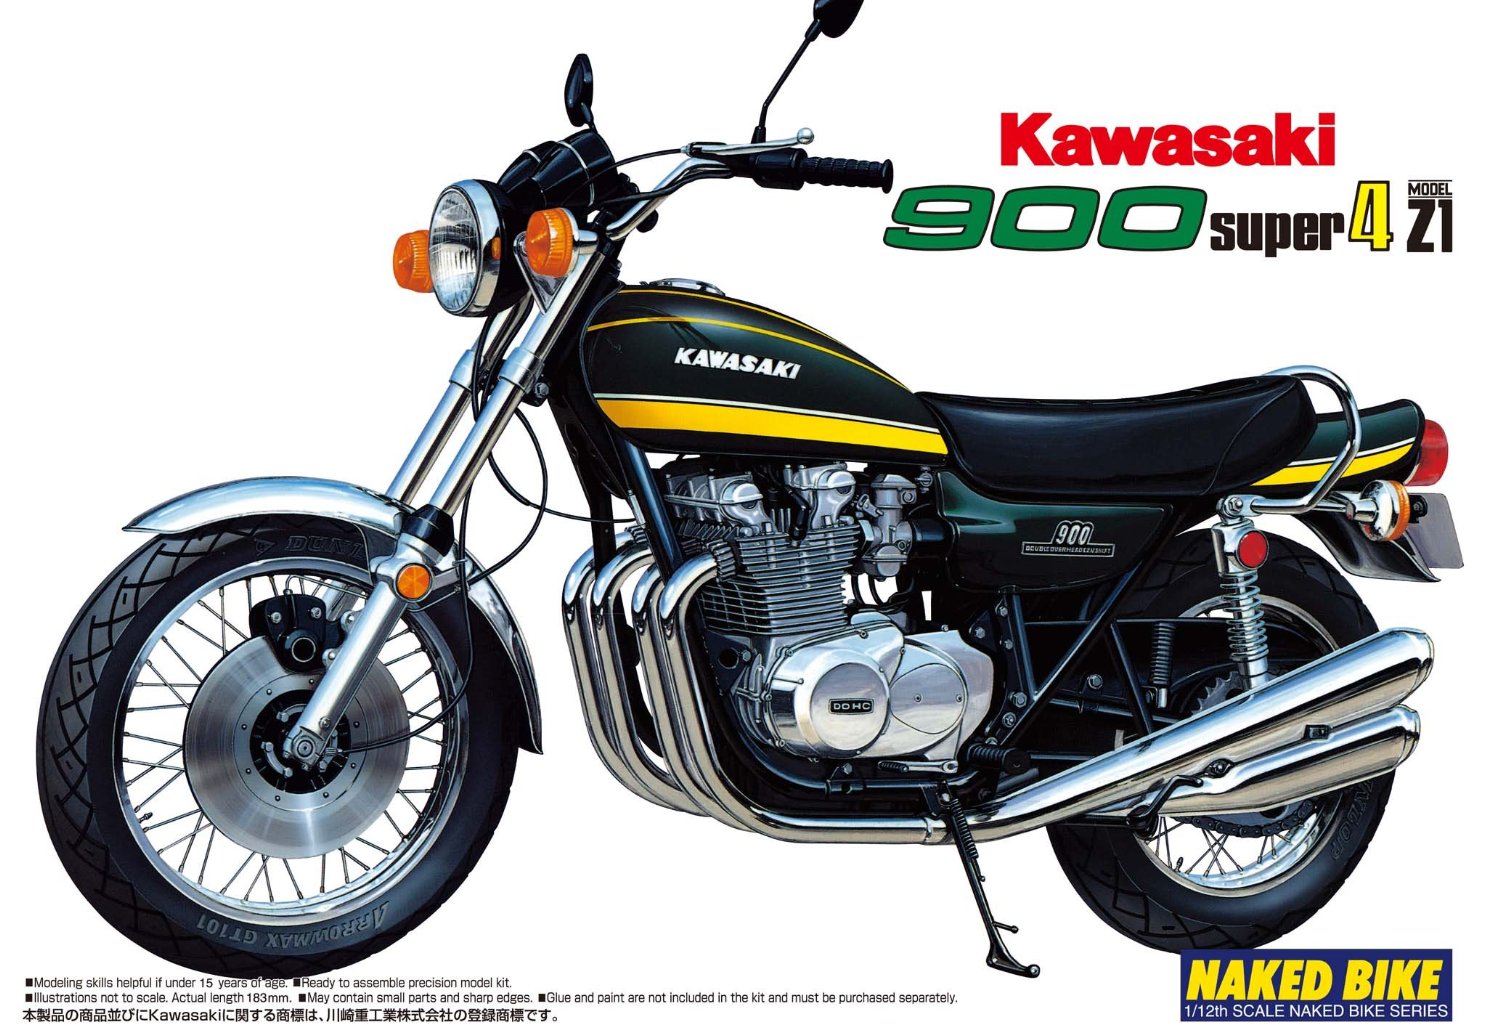 NB12 Kawasaki 900 Super4 1/12